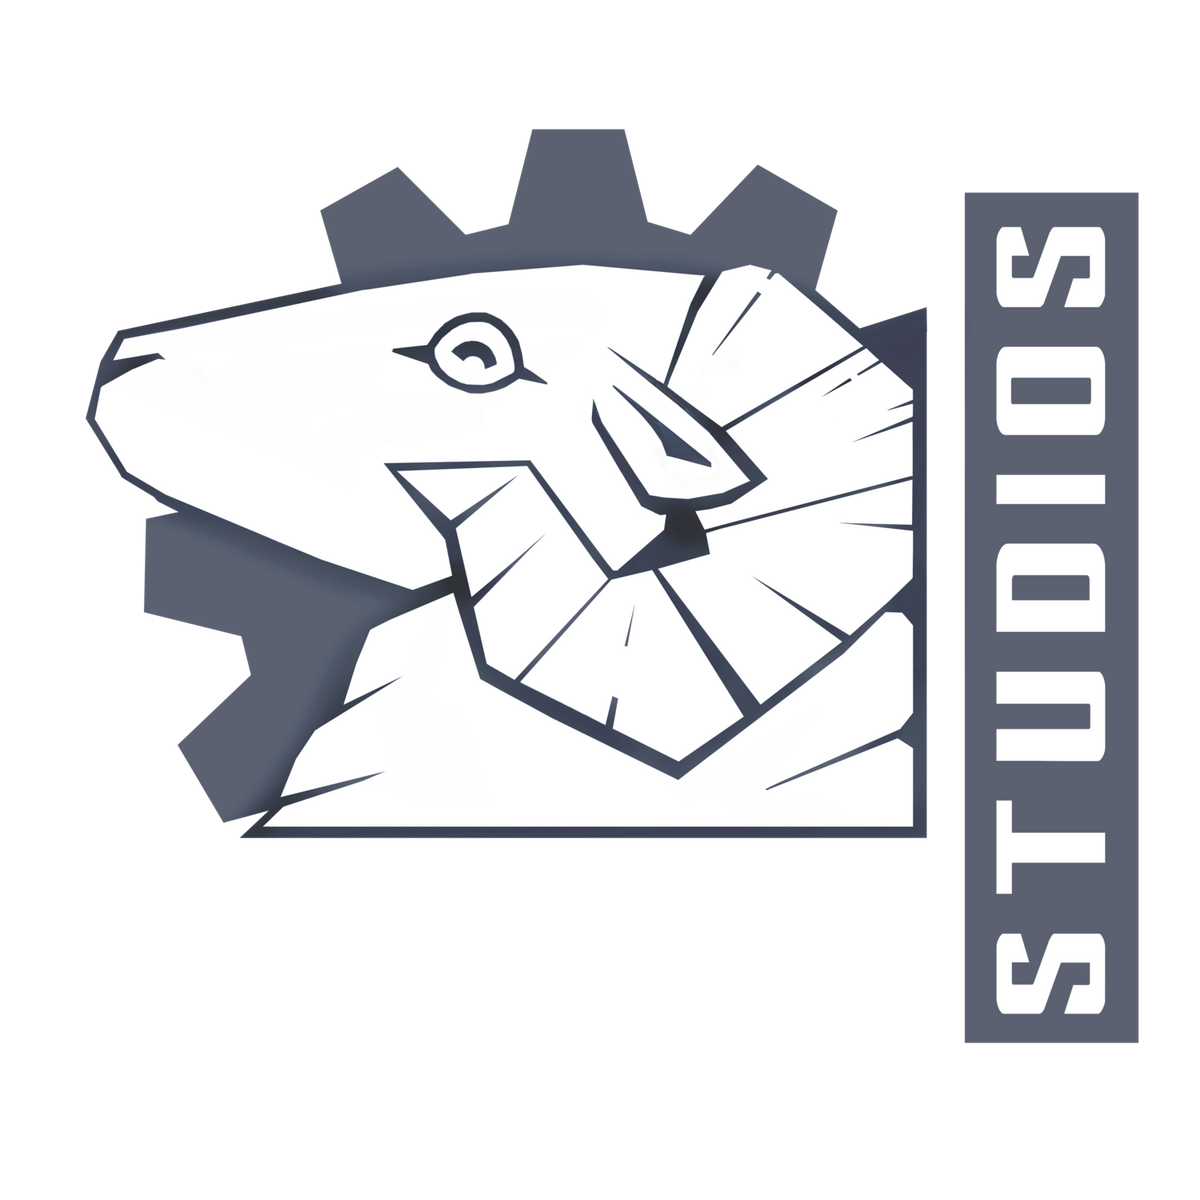 Steel Wool Studios 